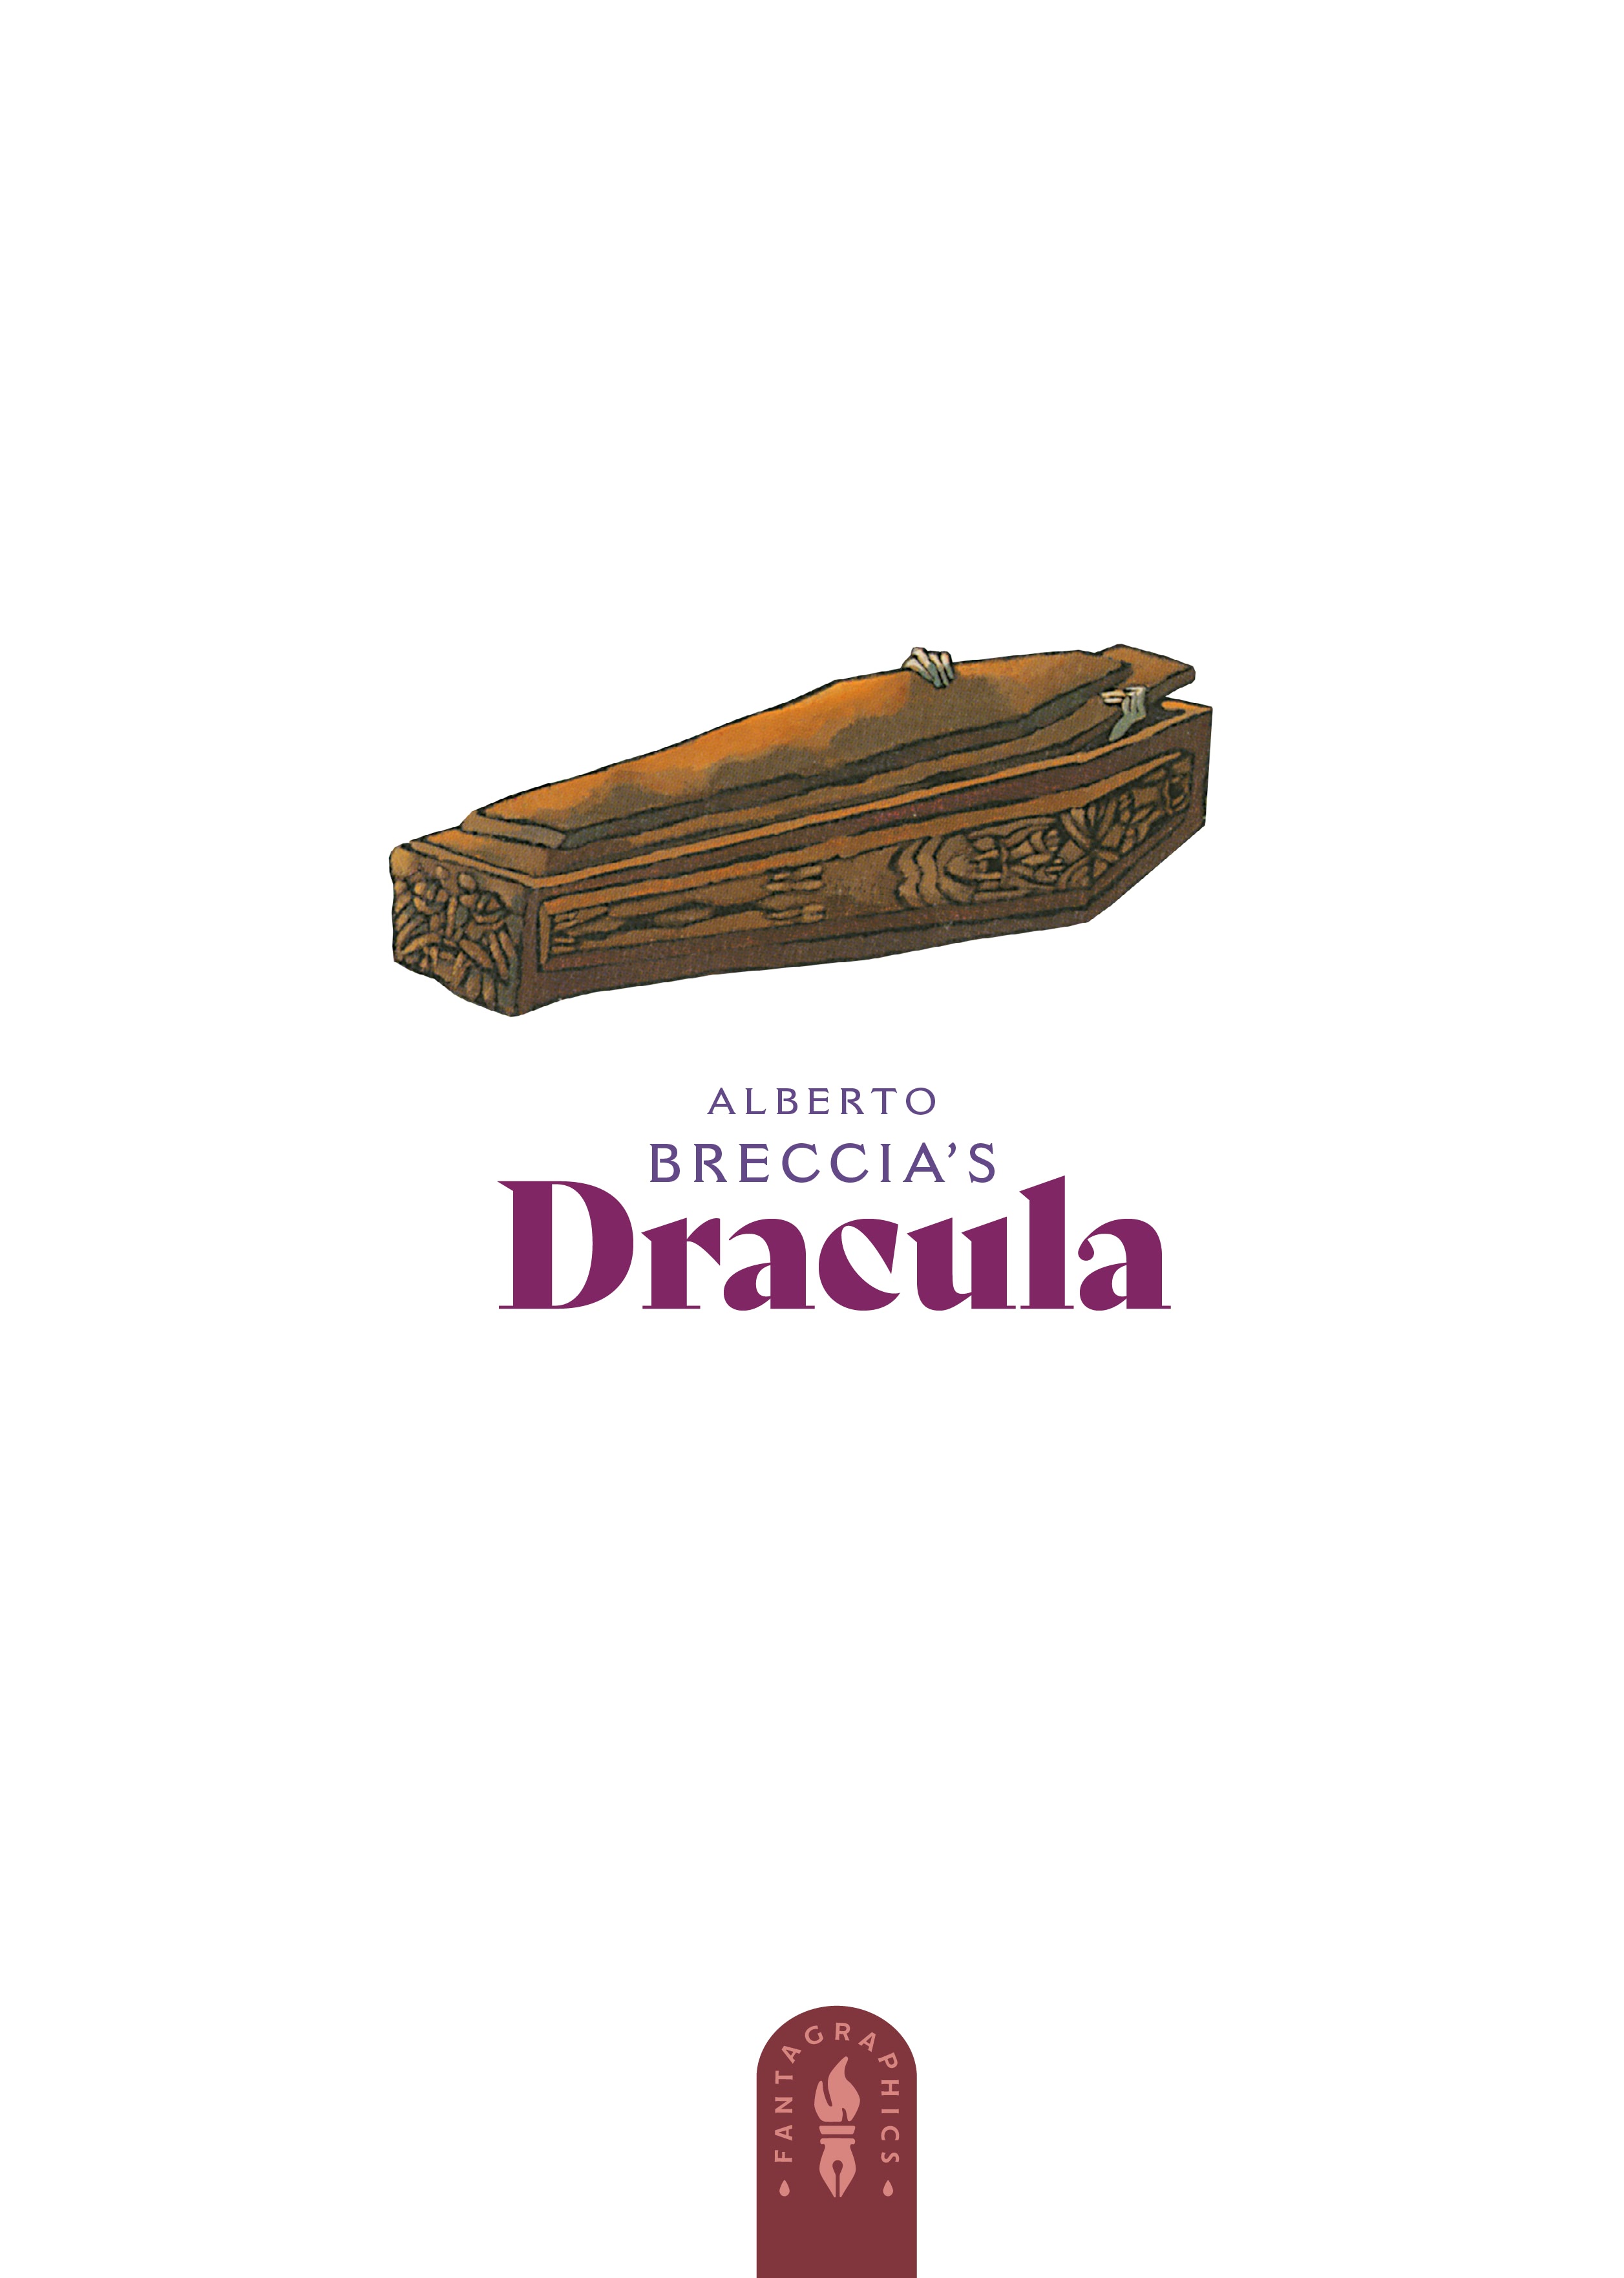 Read online Alberto Breccia's Dracula comic -  Issue # TPB - 2